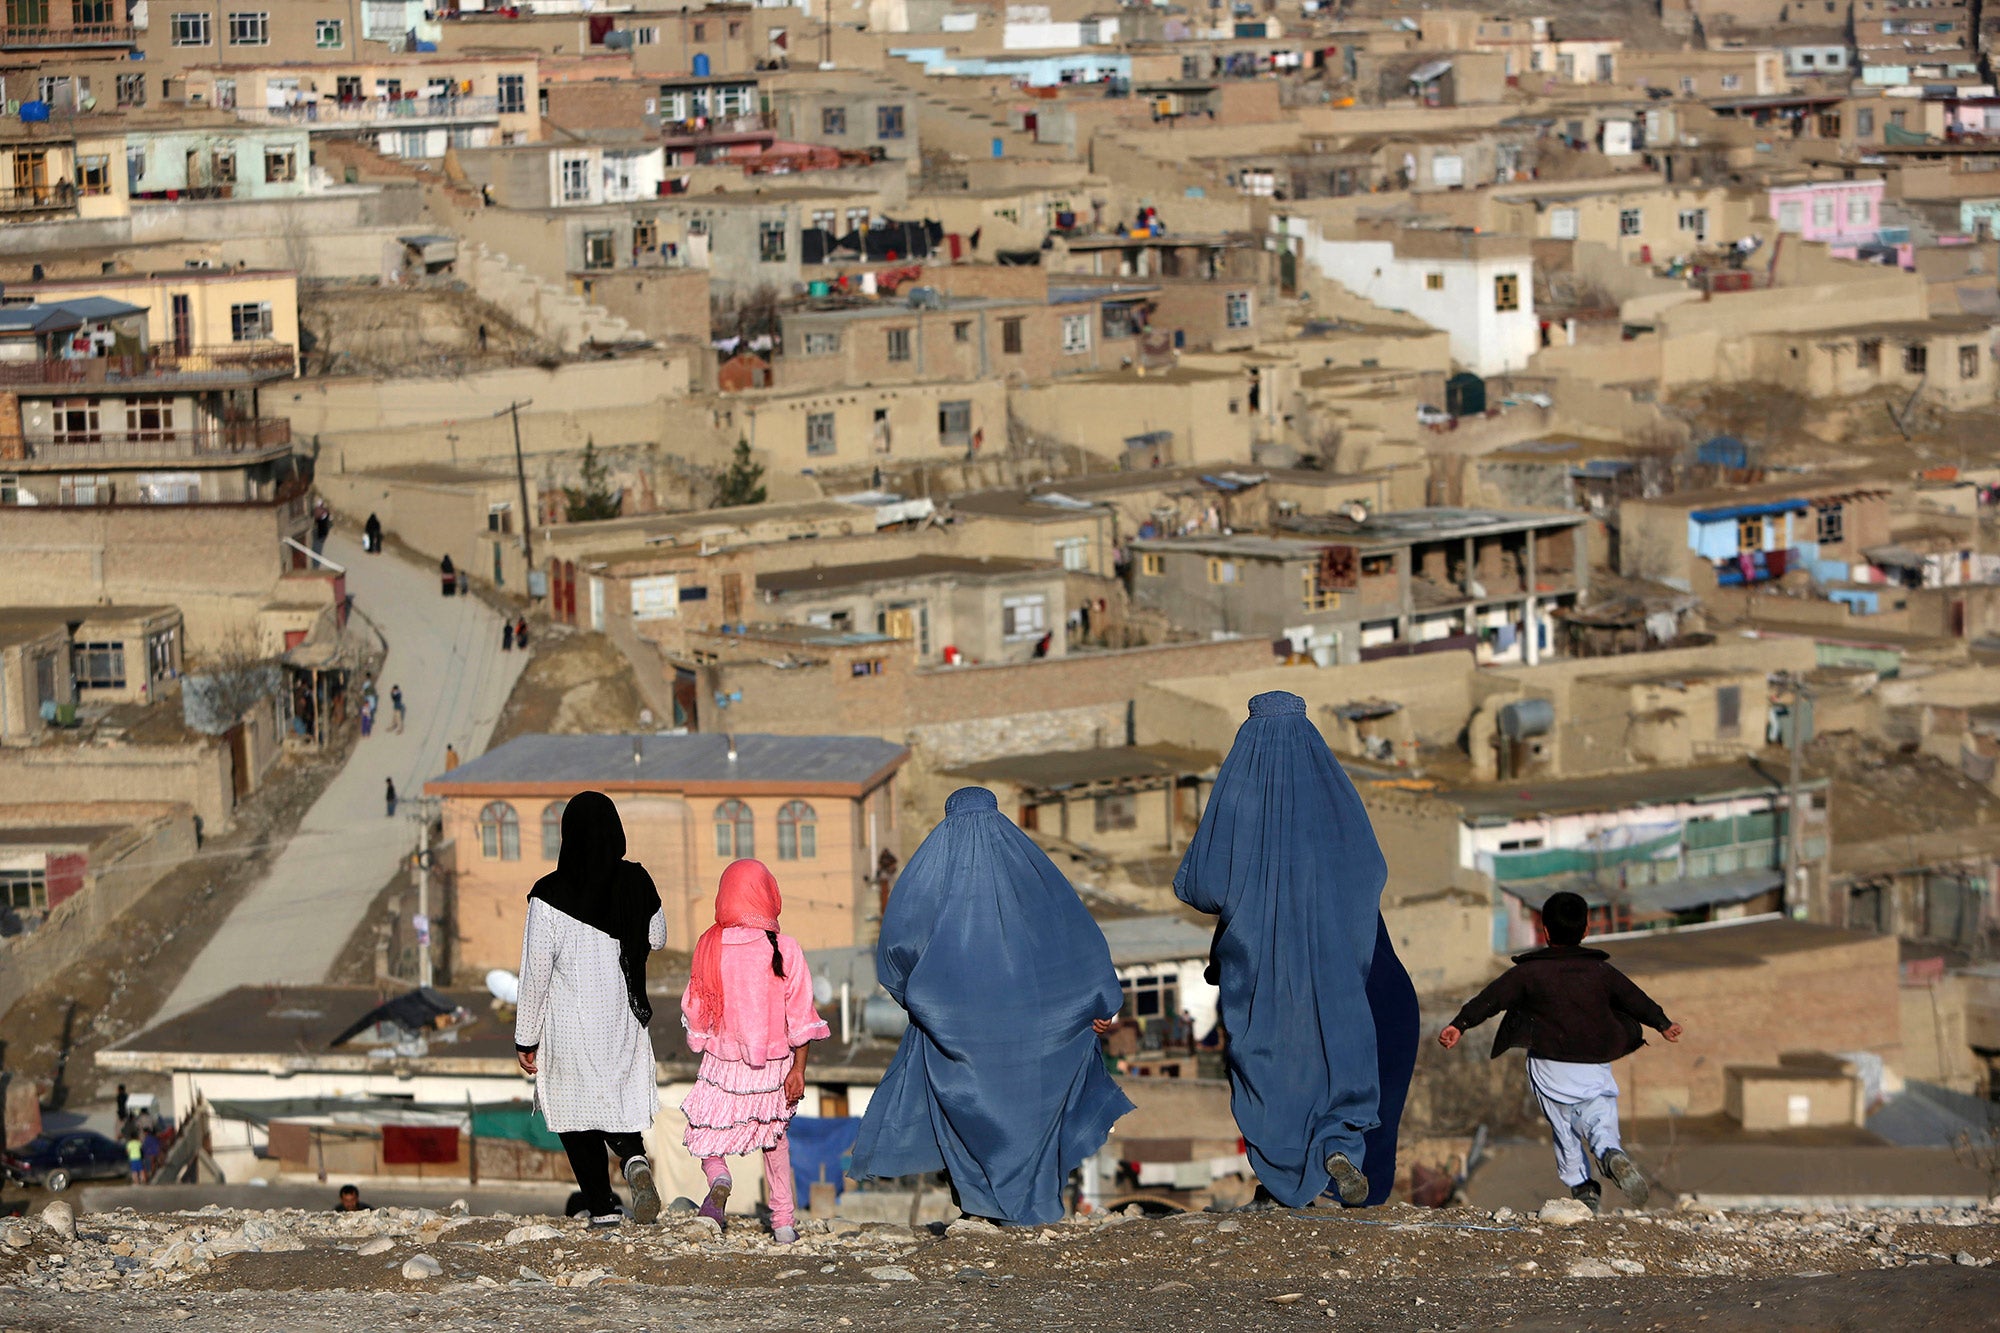 Aproape că nu se mai aude: Ce se mai întâmplă în Afganistan